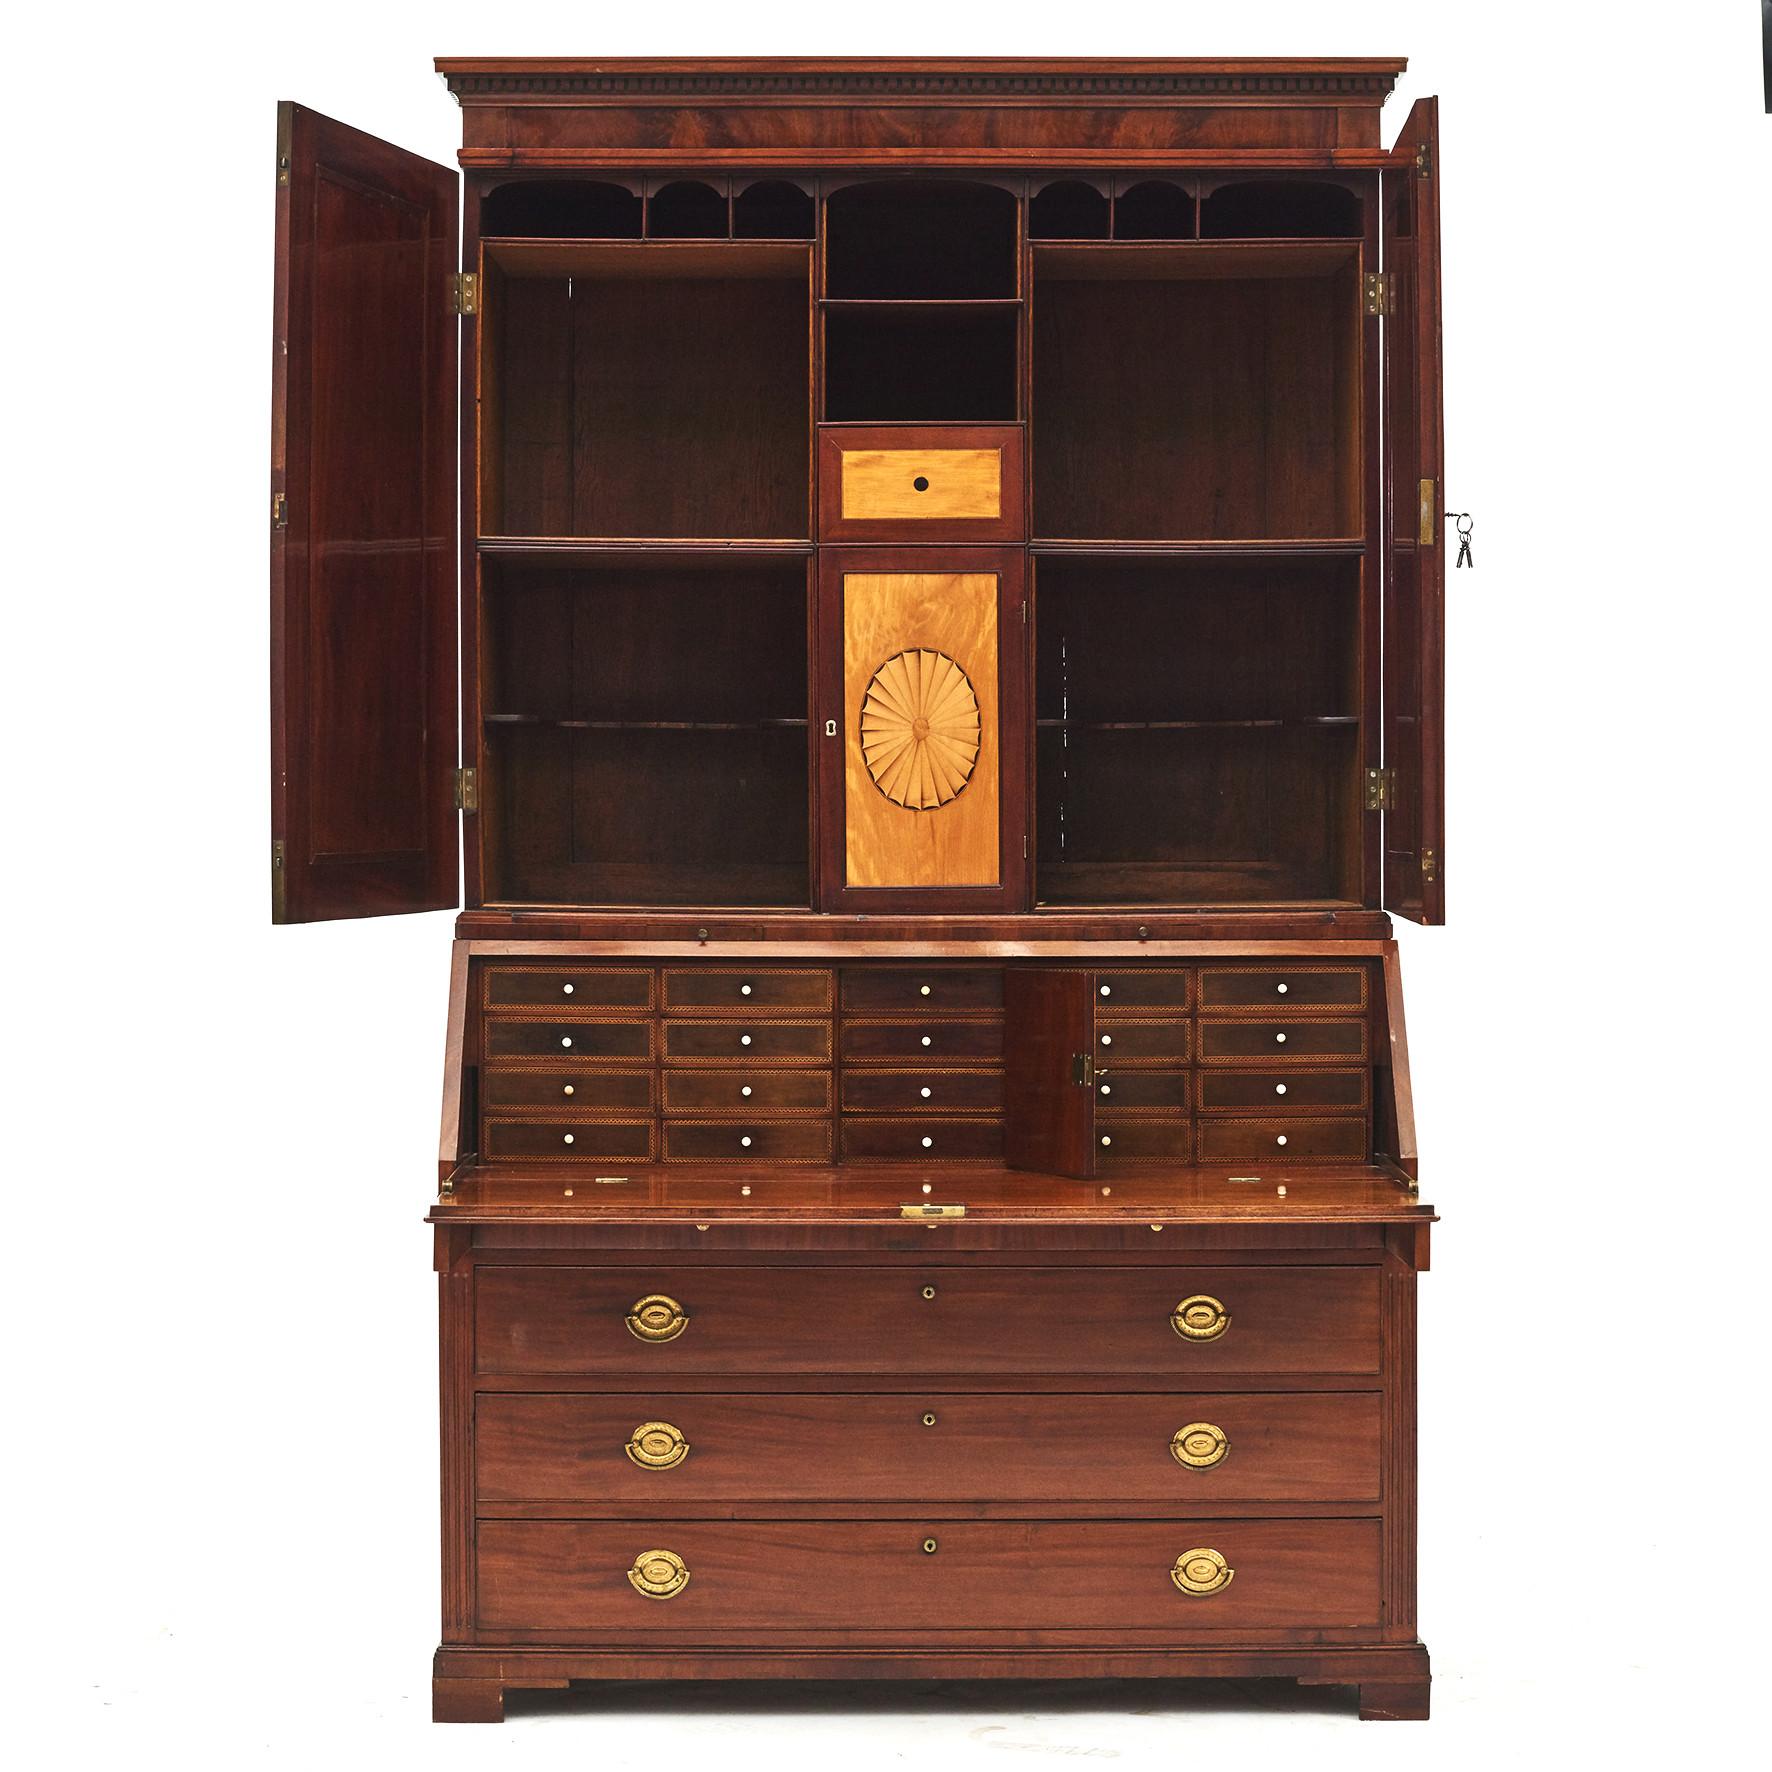 Louis XVI Classic Mahogany Slant Front Bureau Bookcase or Secretary from Altona